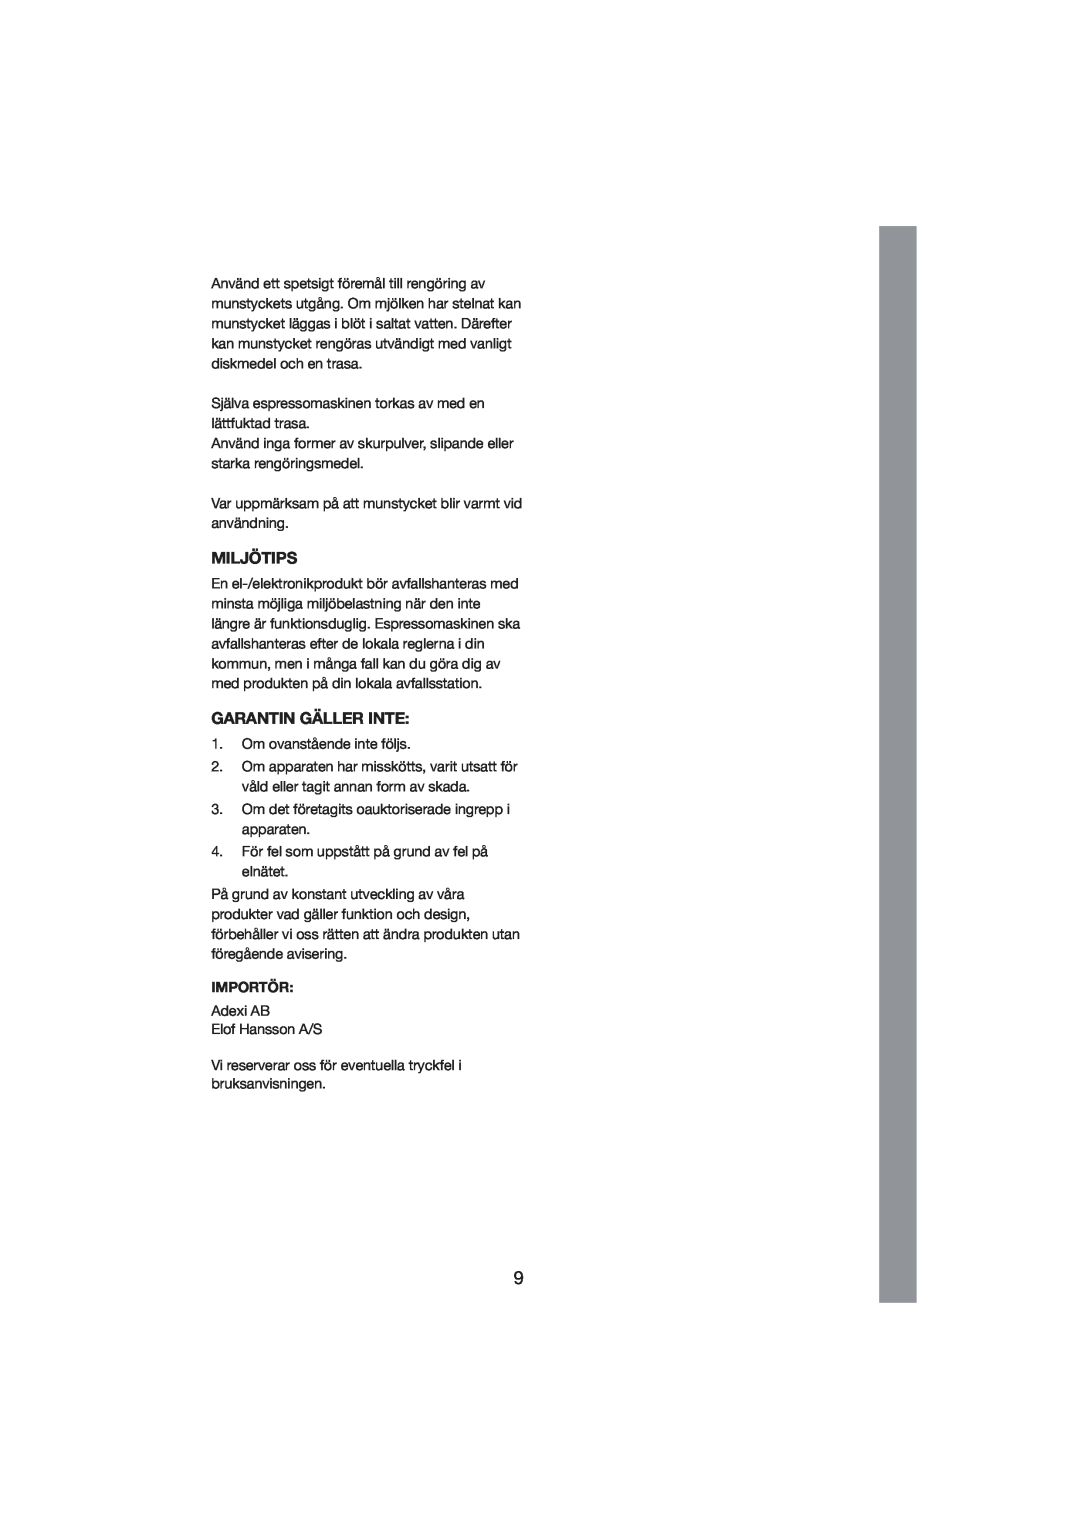 Melissa 245-007 manual Miljötips, Garantin Gäller Inte, Importör 